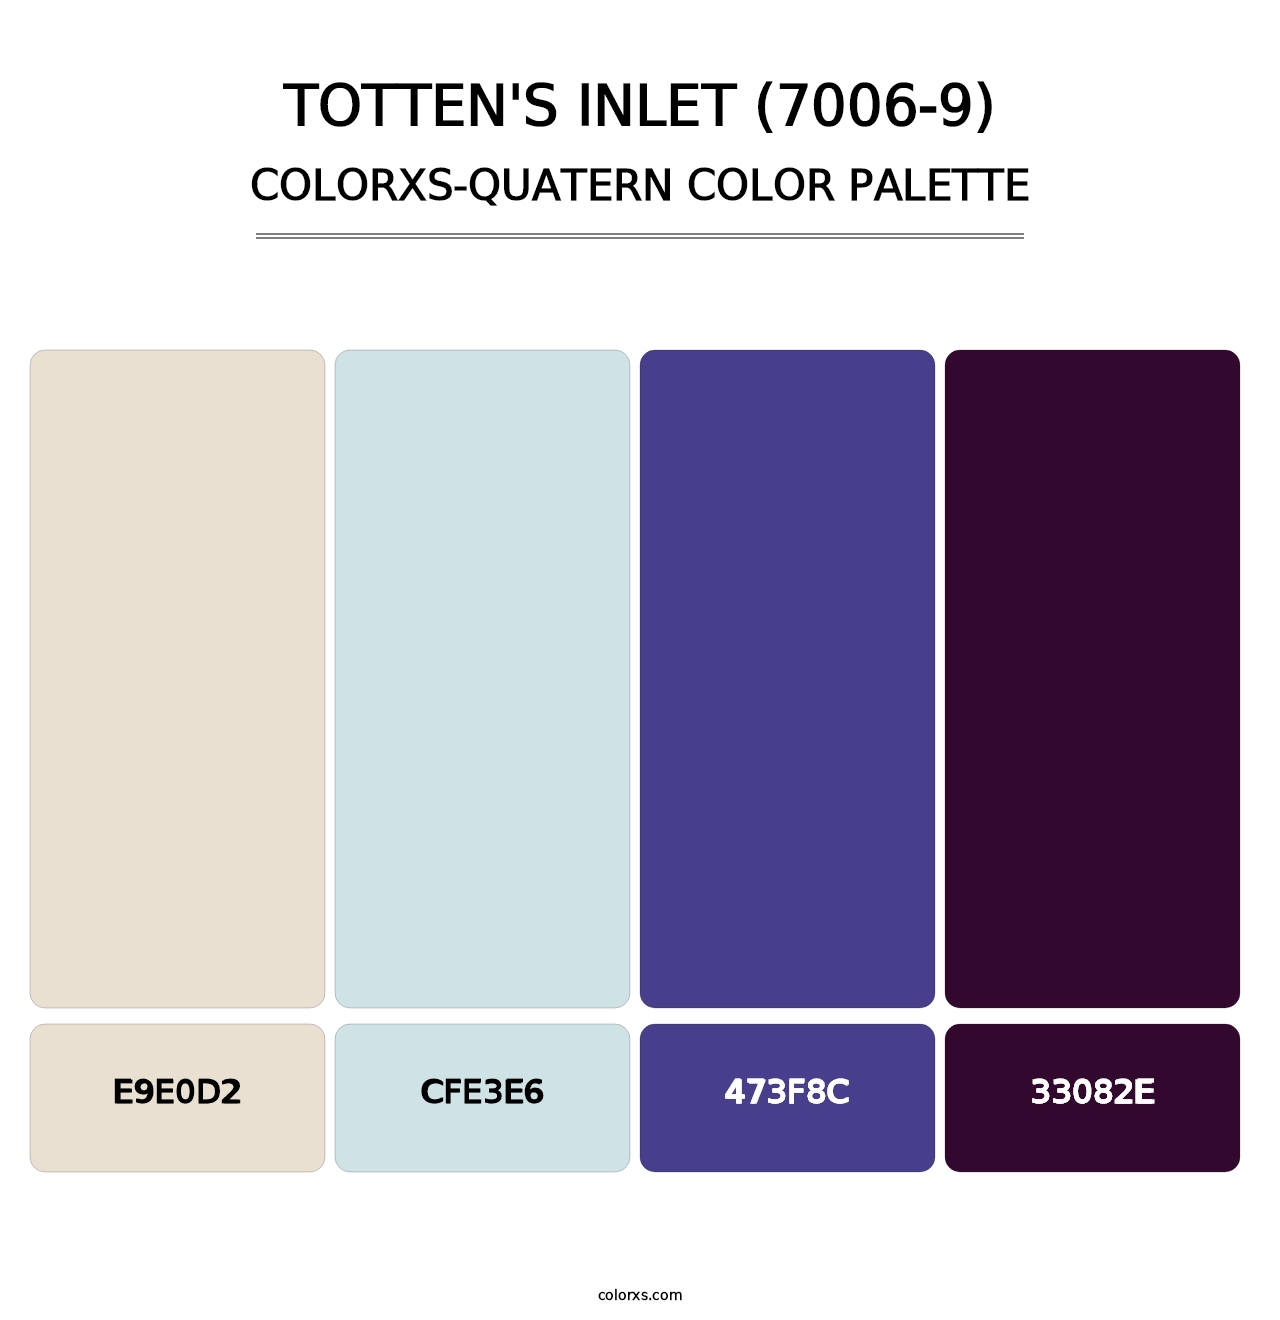 Totten's Inlet (7006-9) - Colorxs Quatern Palette